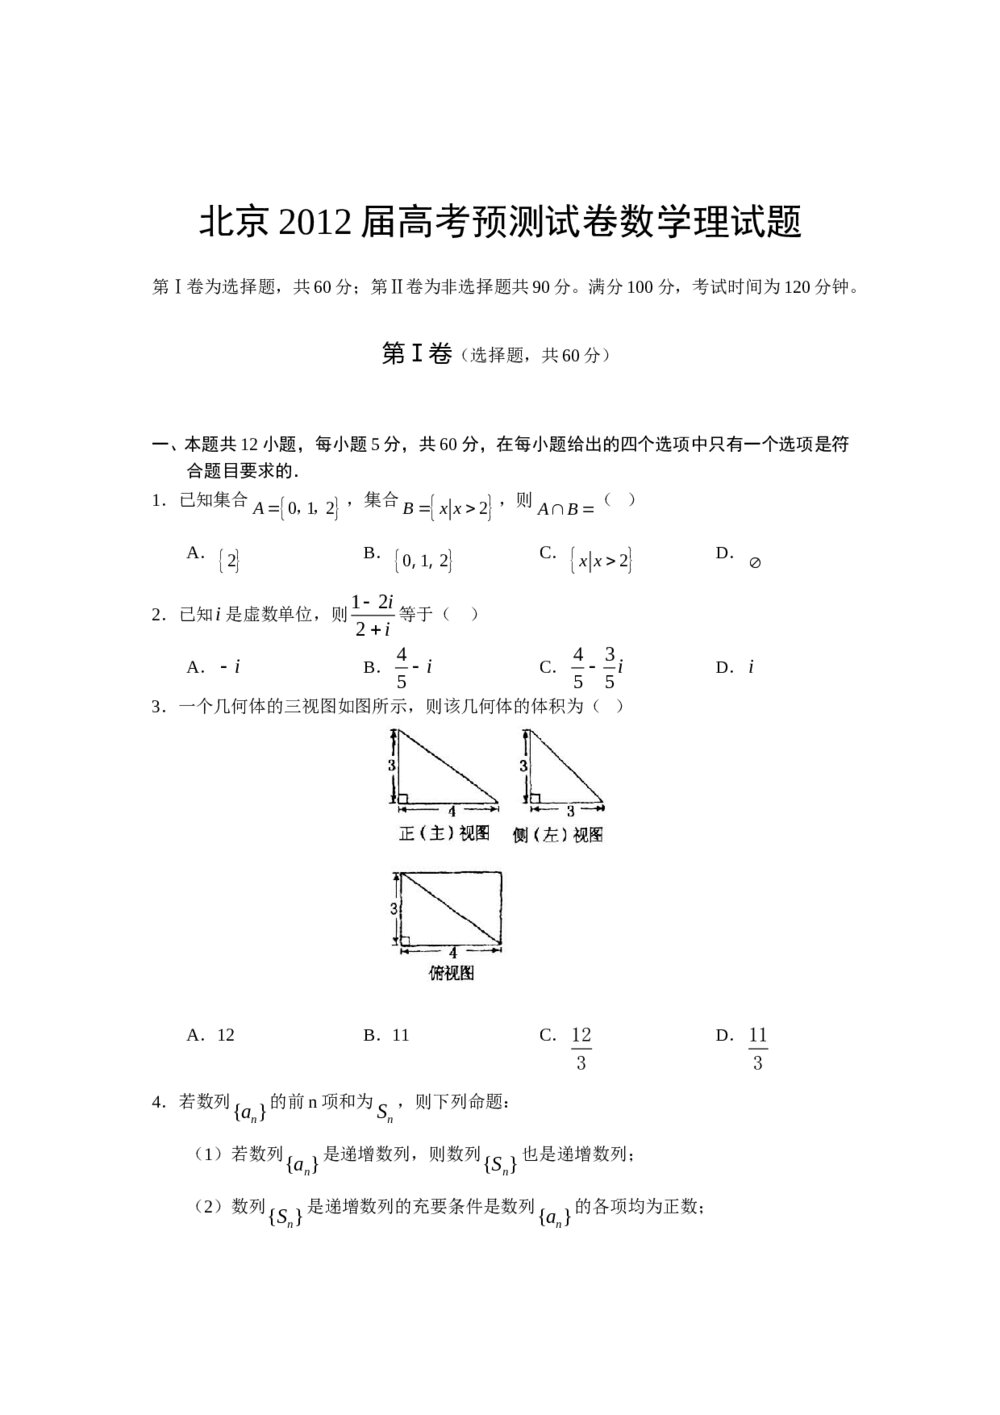 北京2012年高考数学(理科)试题试卷+答案